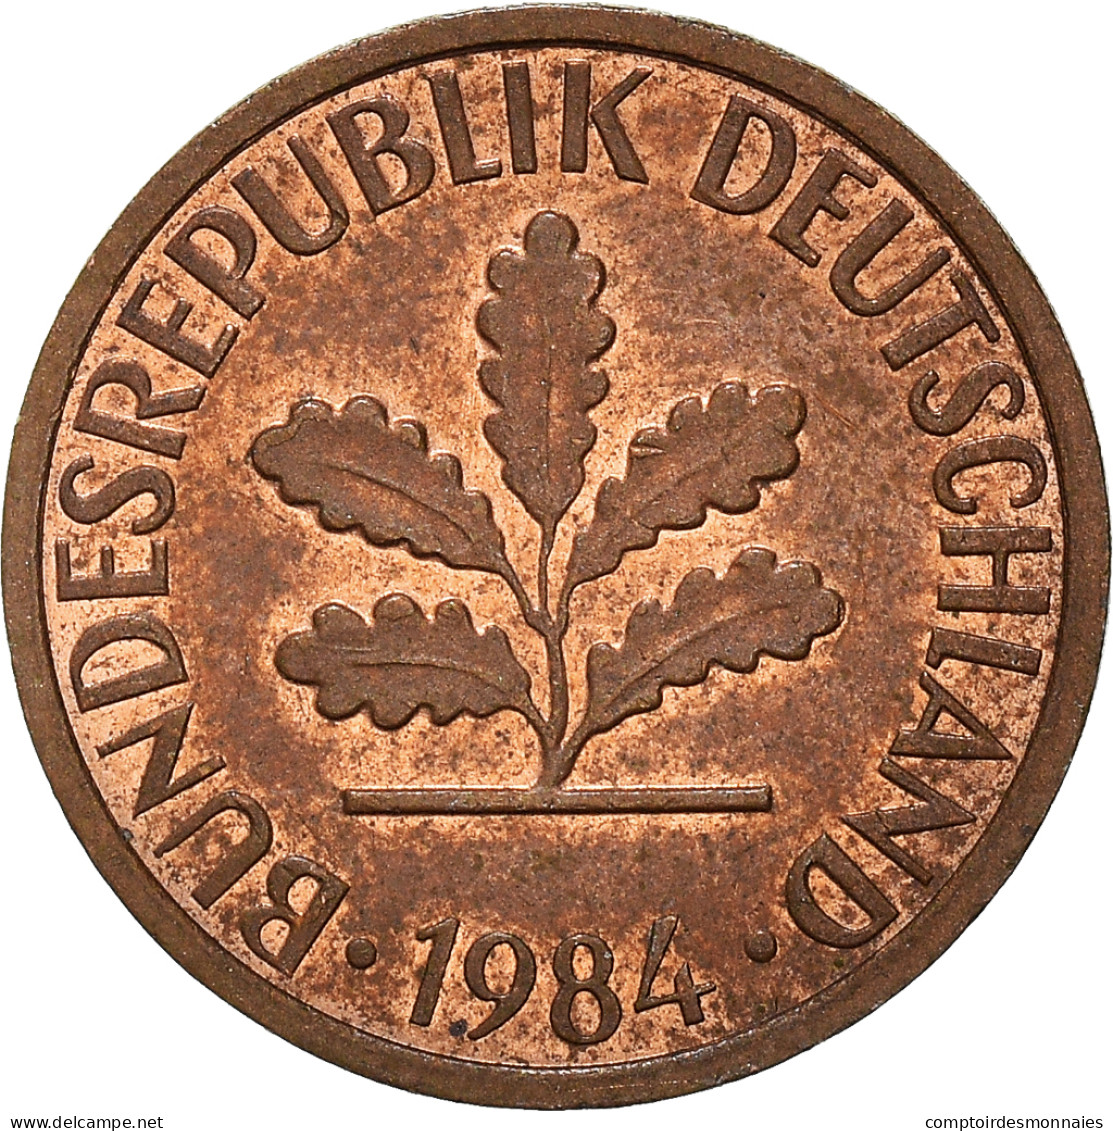 Monnaie, République Fédérale Allemande, Pfennig - 1 Pfennig